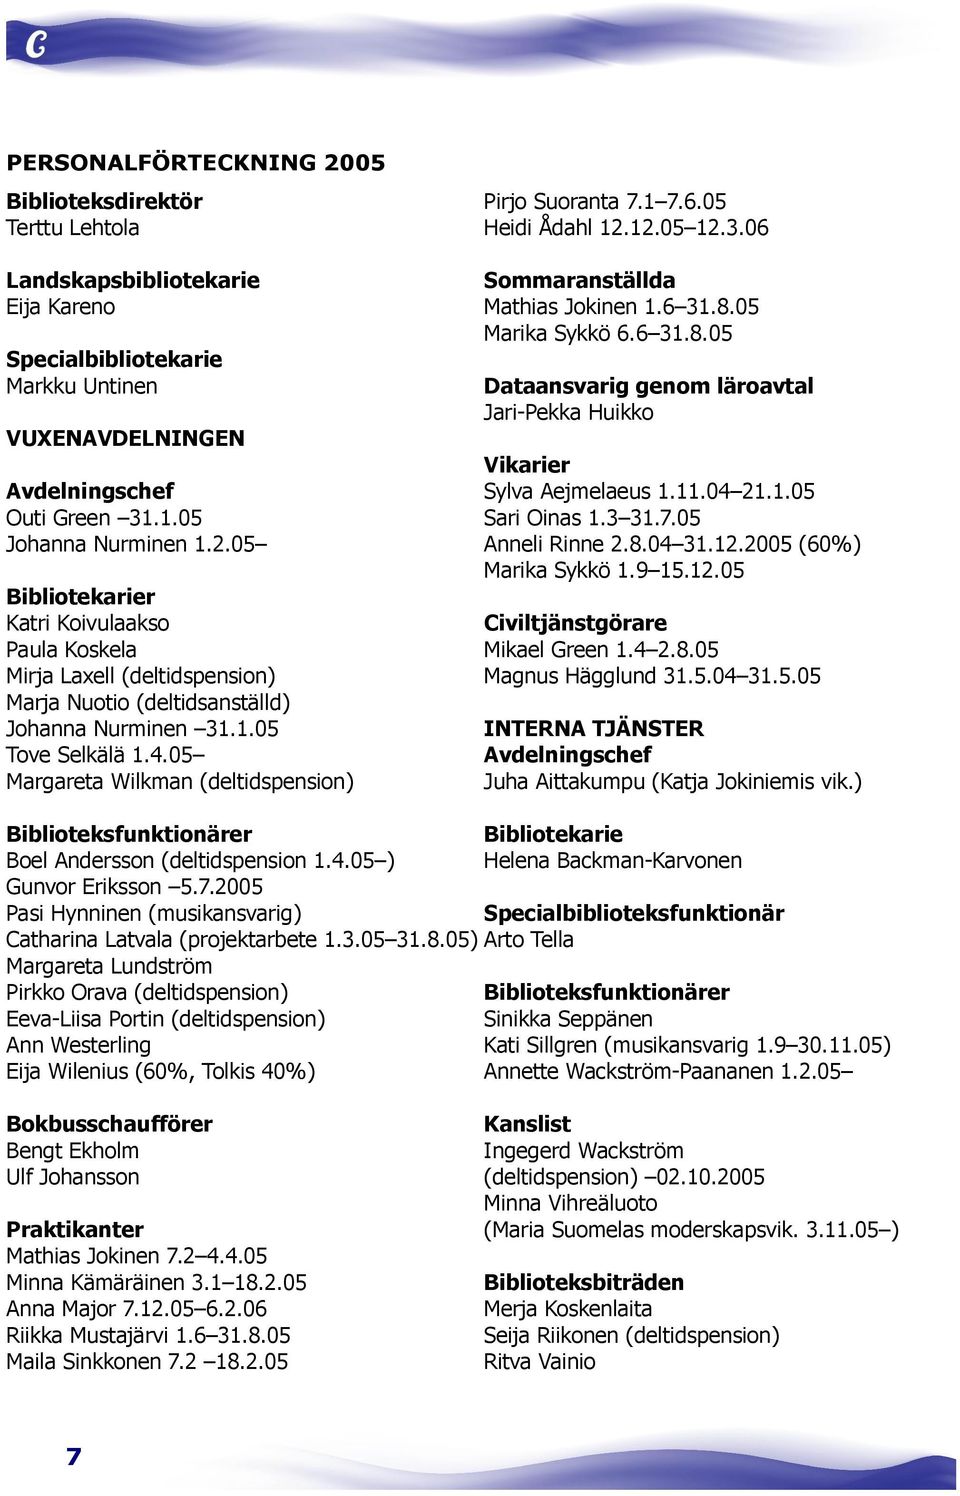 05 Bibliotekarier Katri Koivulaakso Paula Koskela Mirja Laxell (deltidspension) Marja Nuotio (deltidsanställd) Johanna Nurminen 31.1.05 Tove Selkälä 1.4.